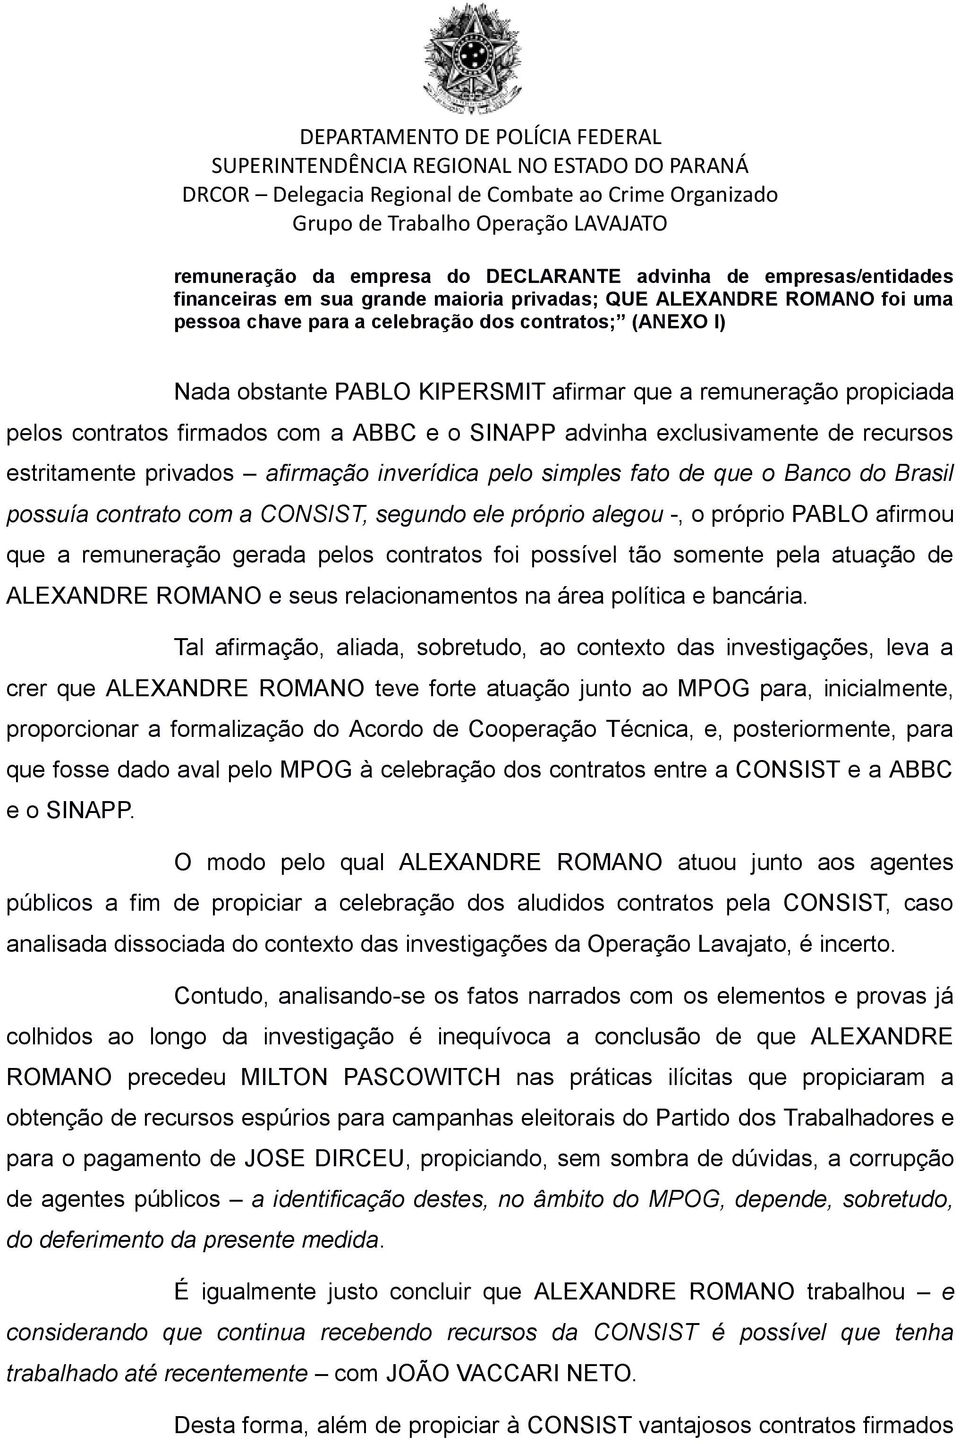 simples fato de que o Banco do Brasil possuía contrato com a CONSIST, segundo ele próprio alegou -, o próprio PABLO afirmou que a remuneração gerada pelos contratos foi possível tão somente pela